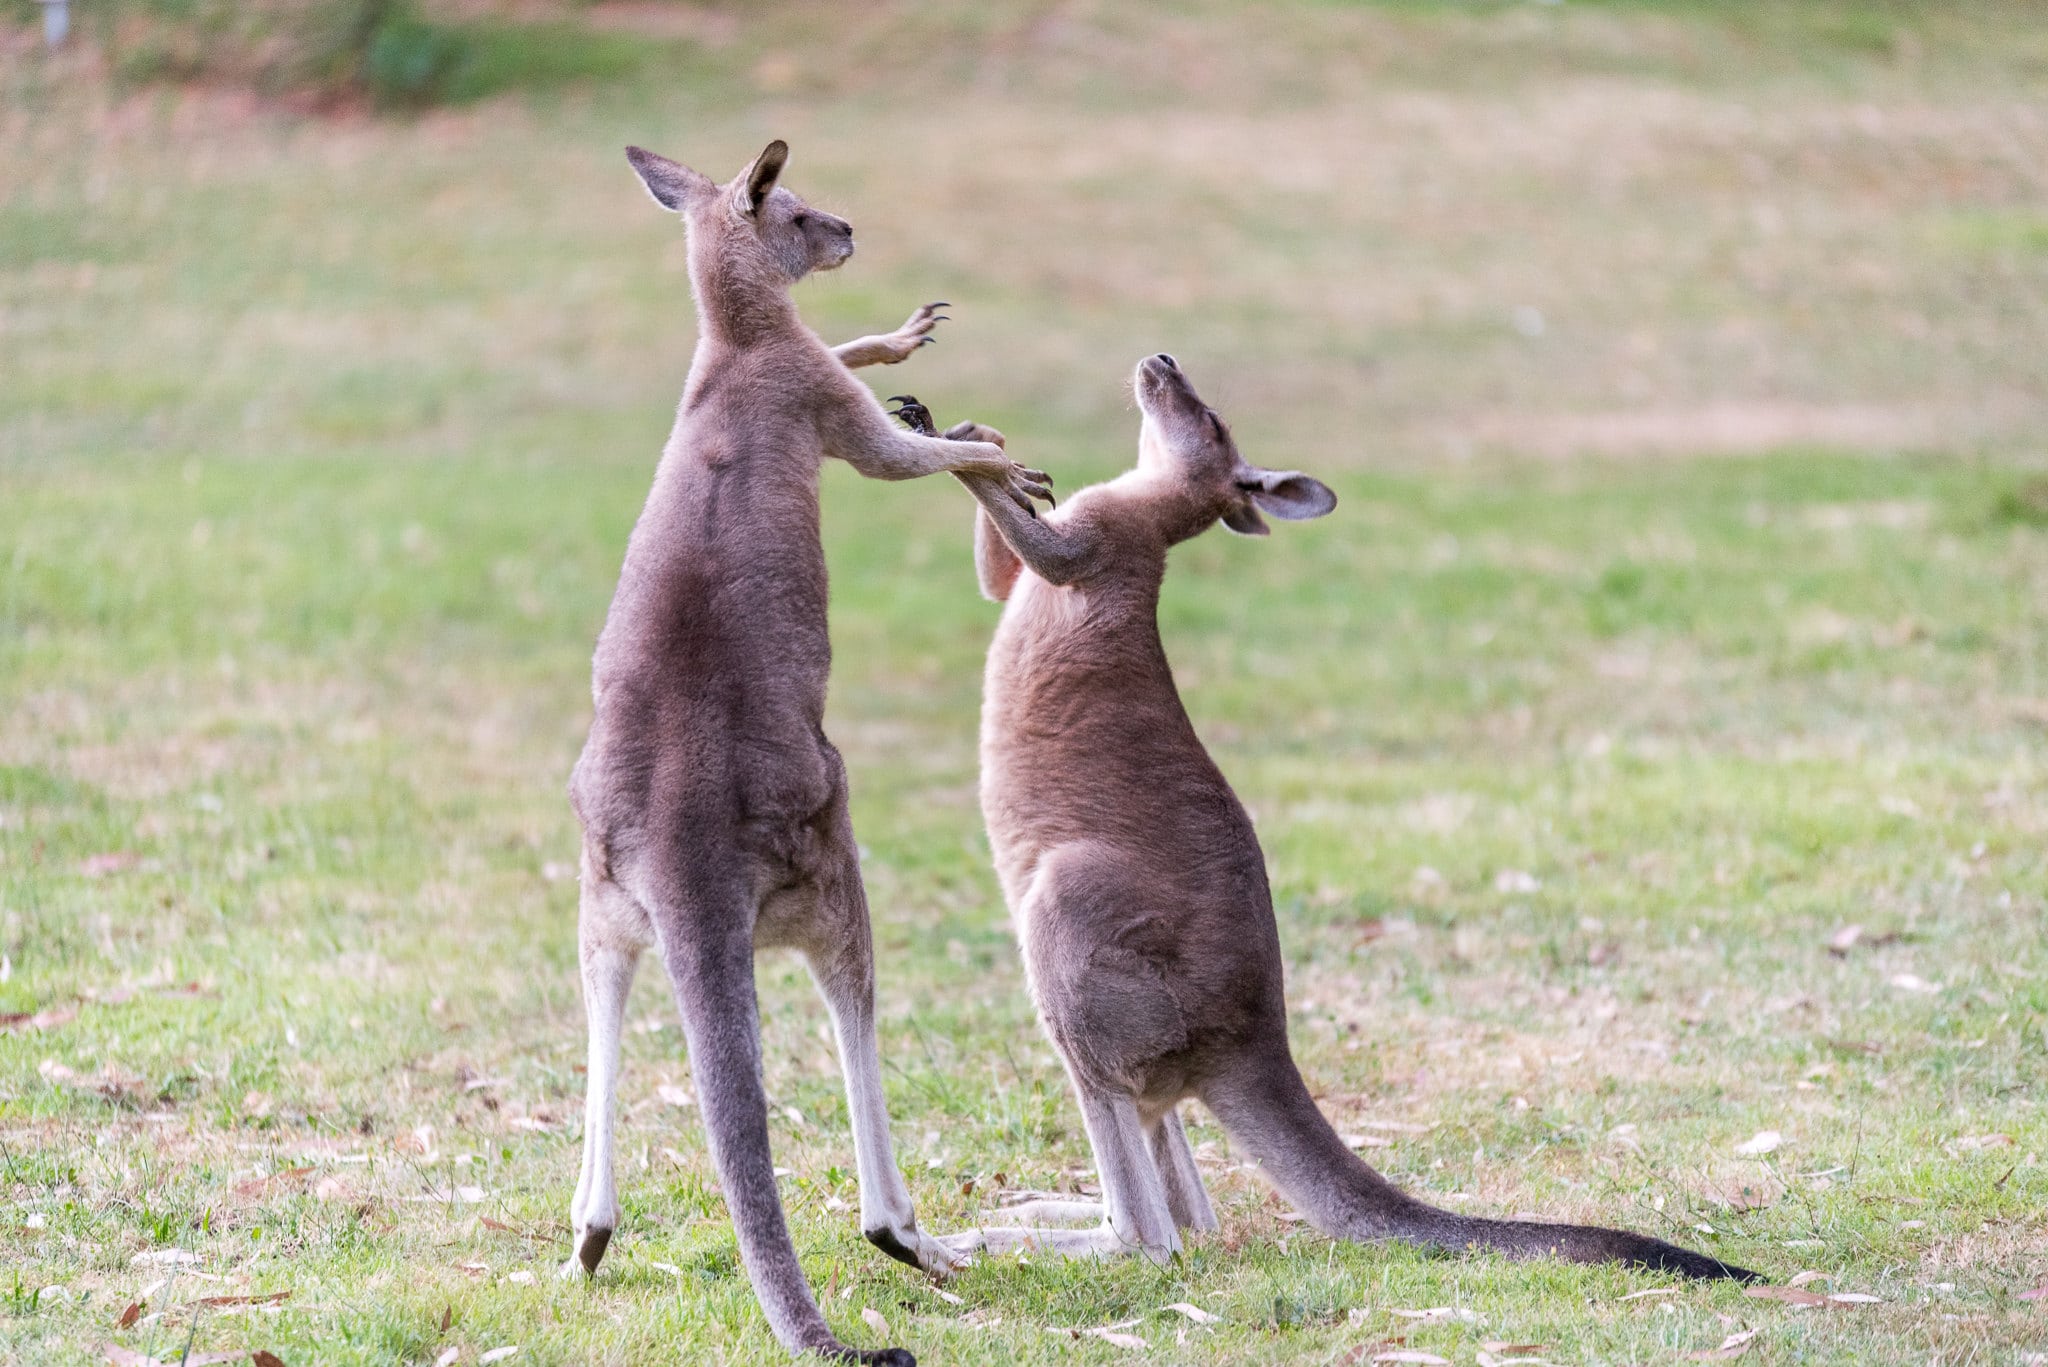 Man punches kangaroo to save dog